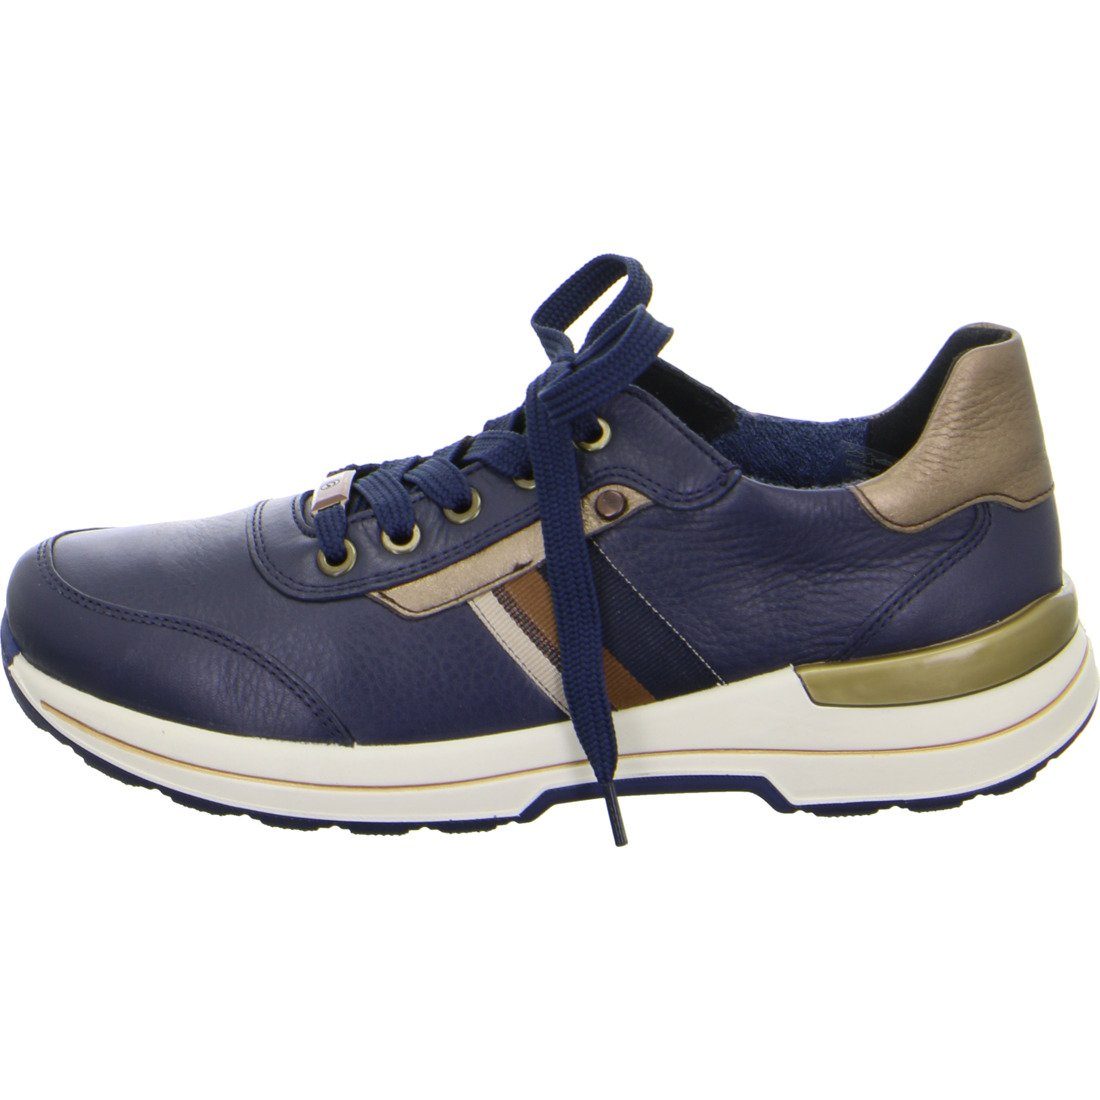 049659 - Ara Ara Glattleder Sneaker blau Nara Schuhe, Sneaker Damen